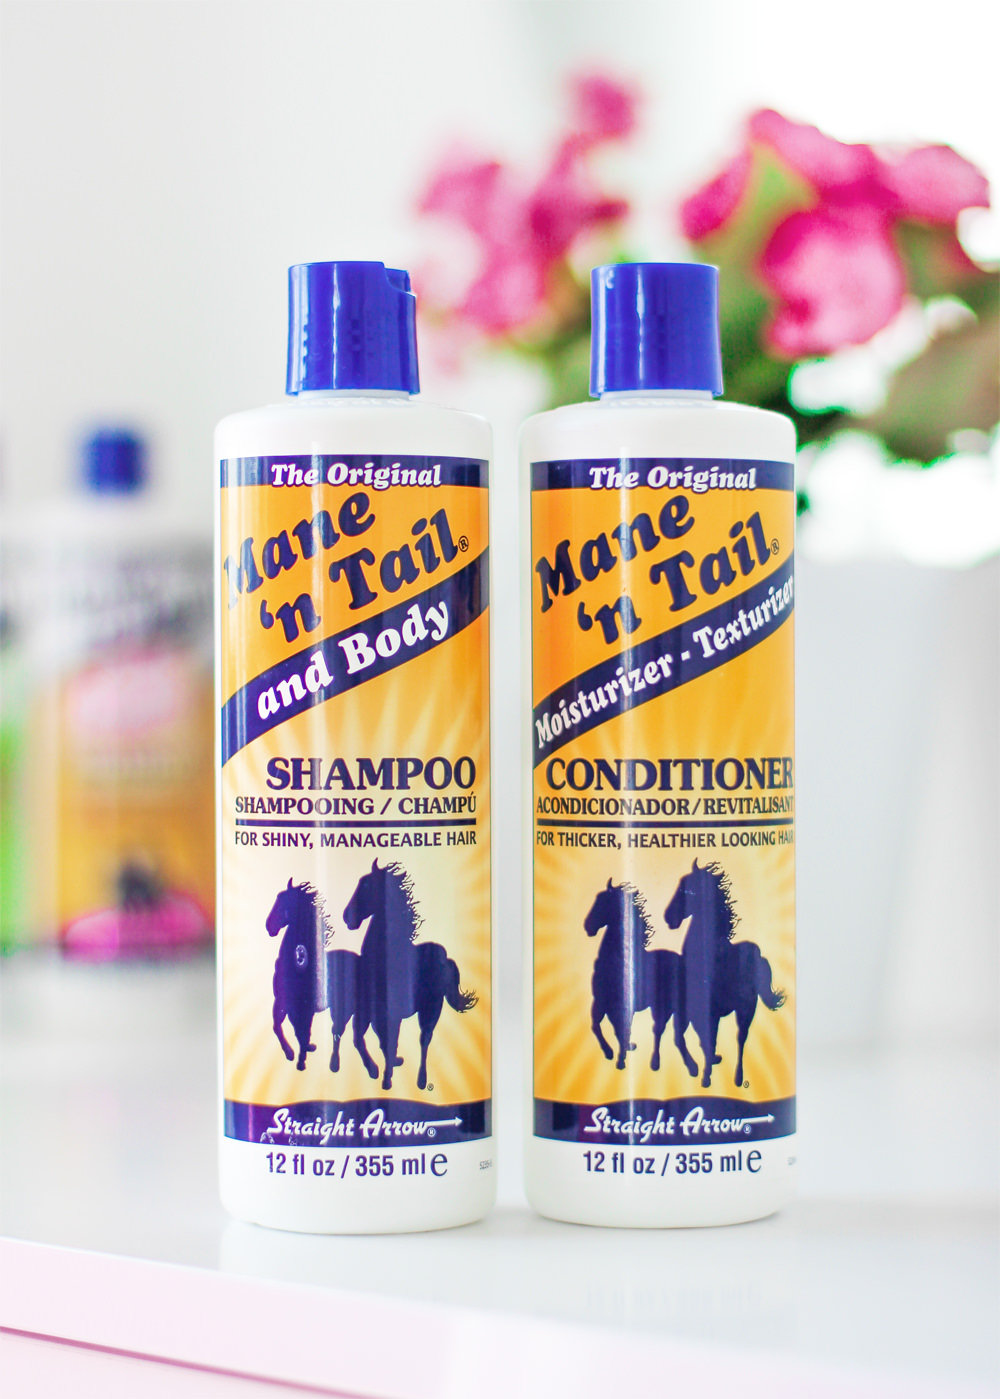 szampon szampon dla koni mane n tail wizaz